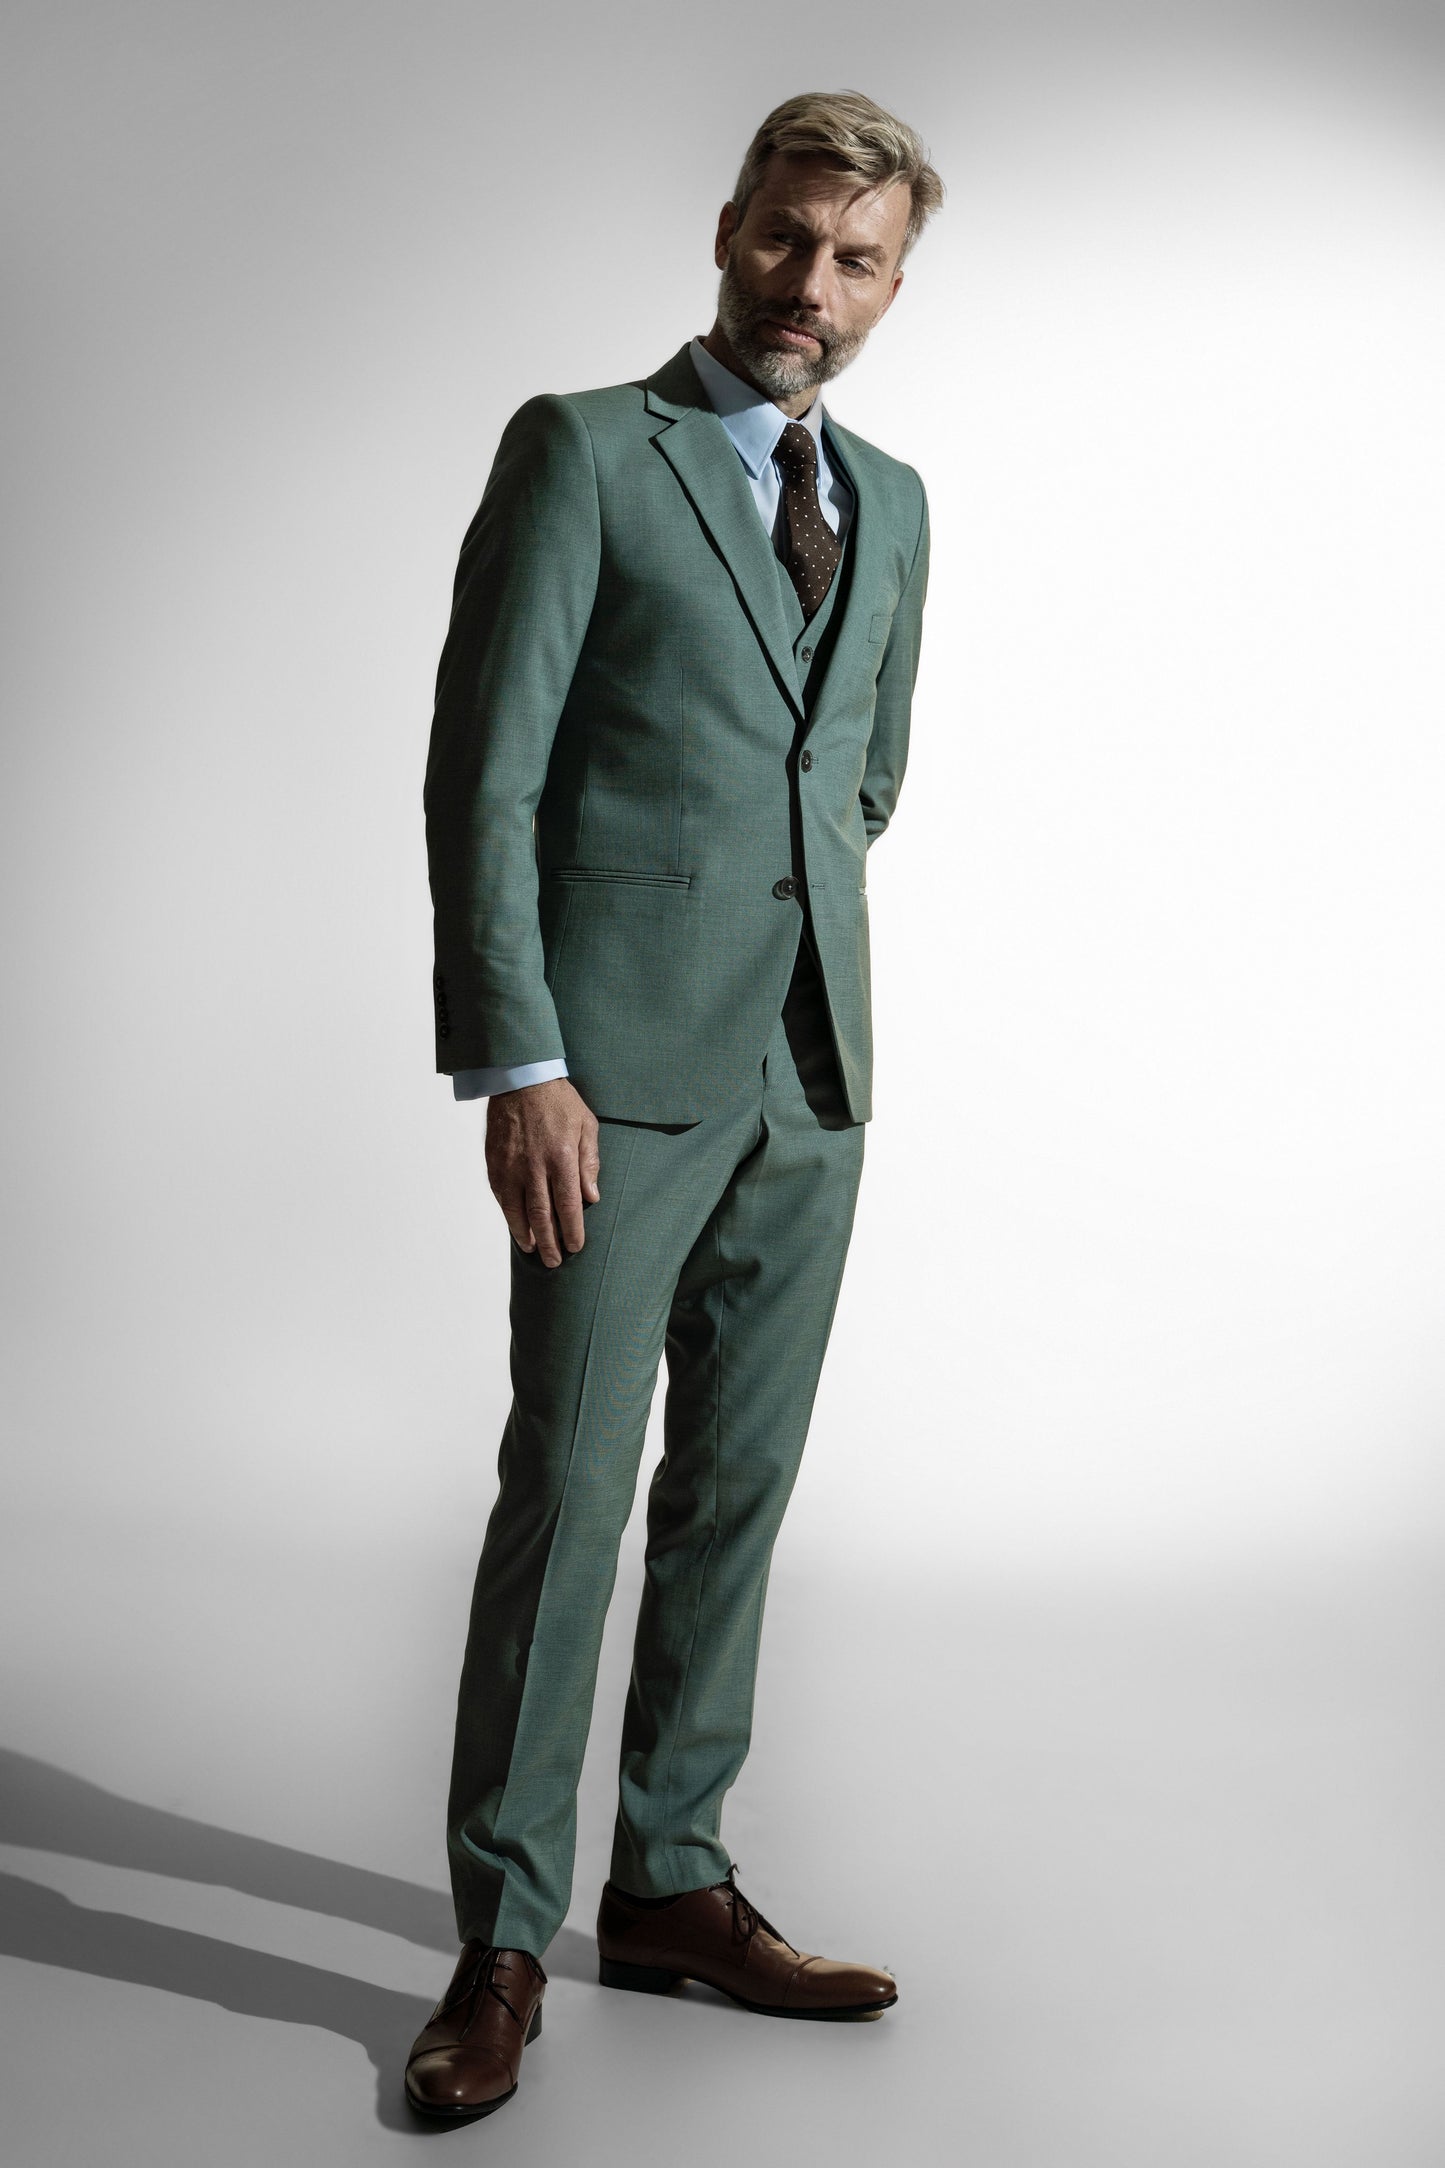 Stilfuld moden mand i en moderne pastelgrøn skræddersyet jakkesæk, brun prikket slips og lædersko, sat mod en bleg baggrund